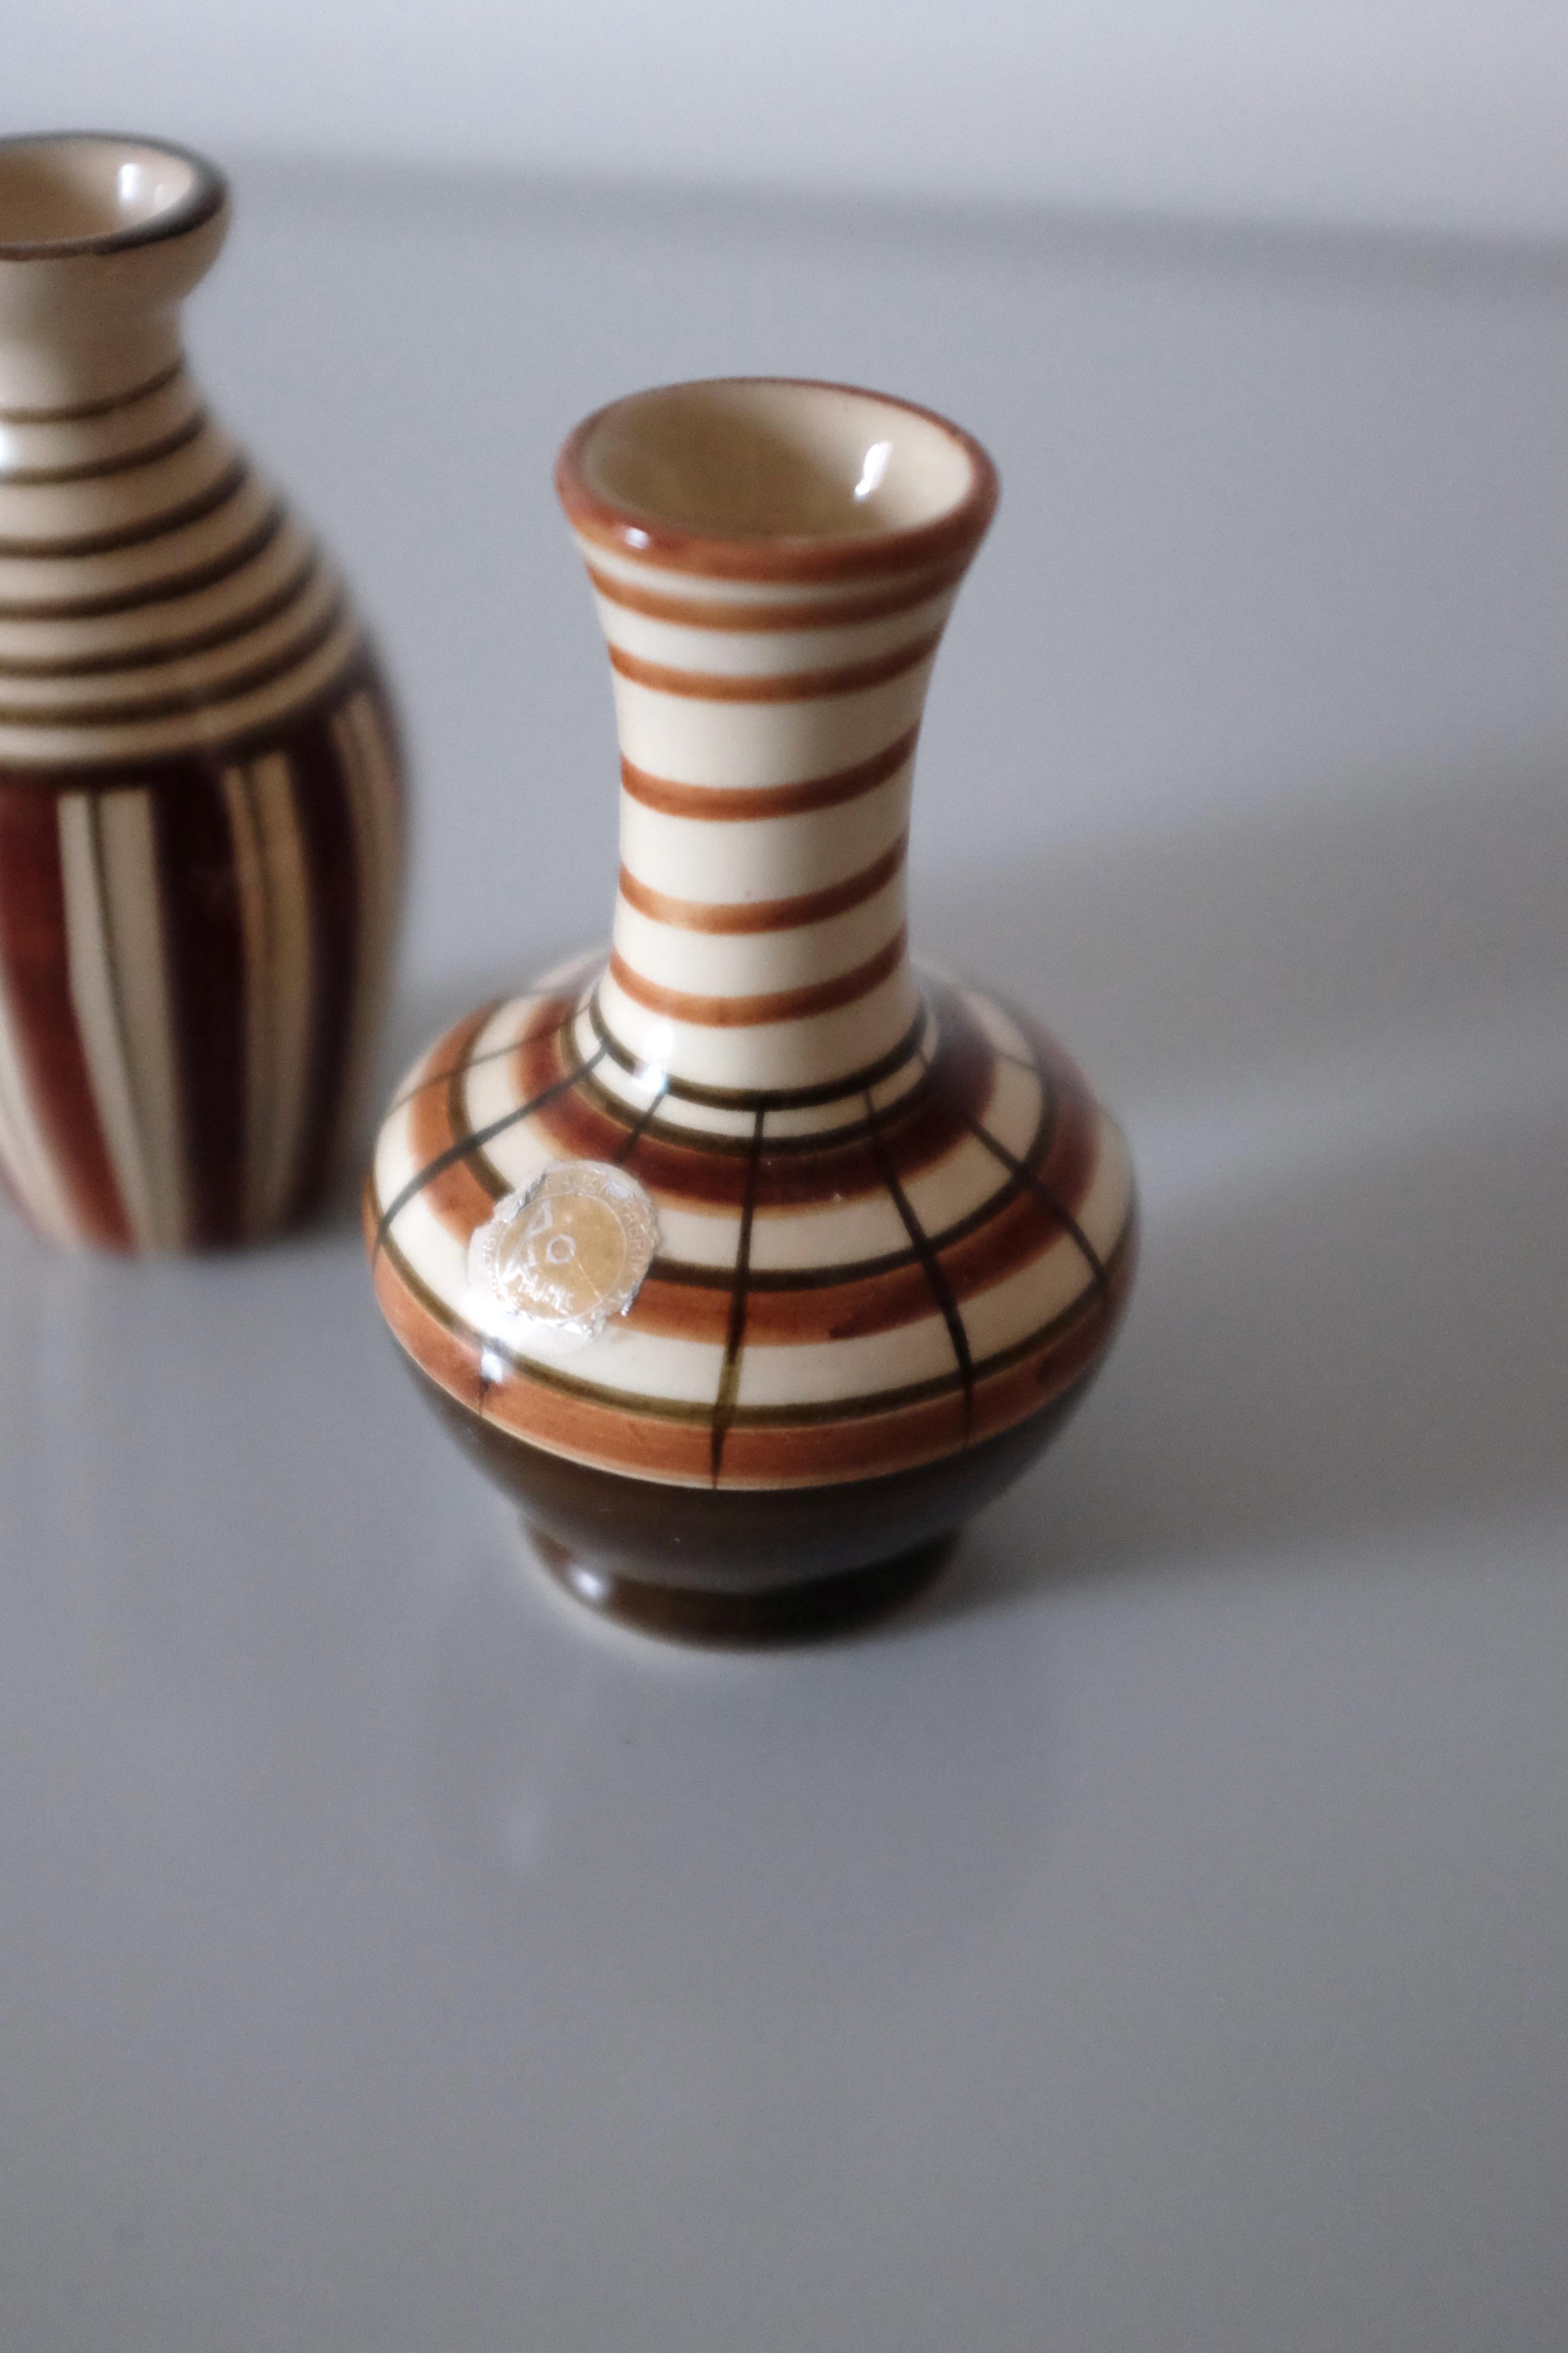 Charmantes Paar Keramikminiaturen von Eva Jancke-Björk für Bo Fajans, Schweden. Sie sind Teil einer Sammlung von Miniaturobjekten, die Eva Jancke-Björk für Bo Fajans entworfen hat und die typisch sind für ihr charakteristisches rundes und weich